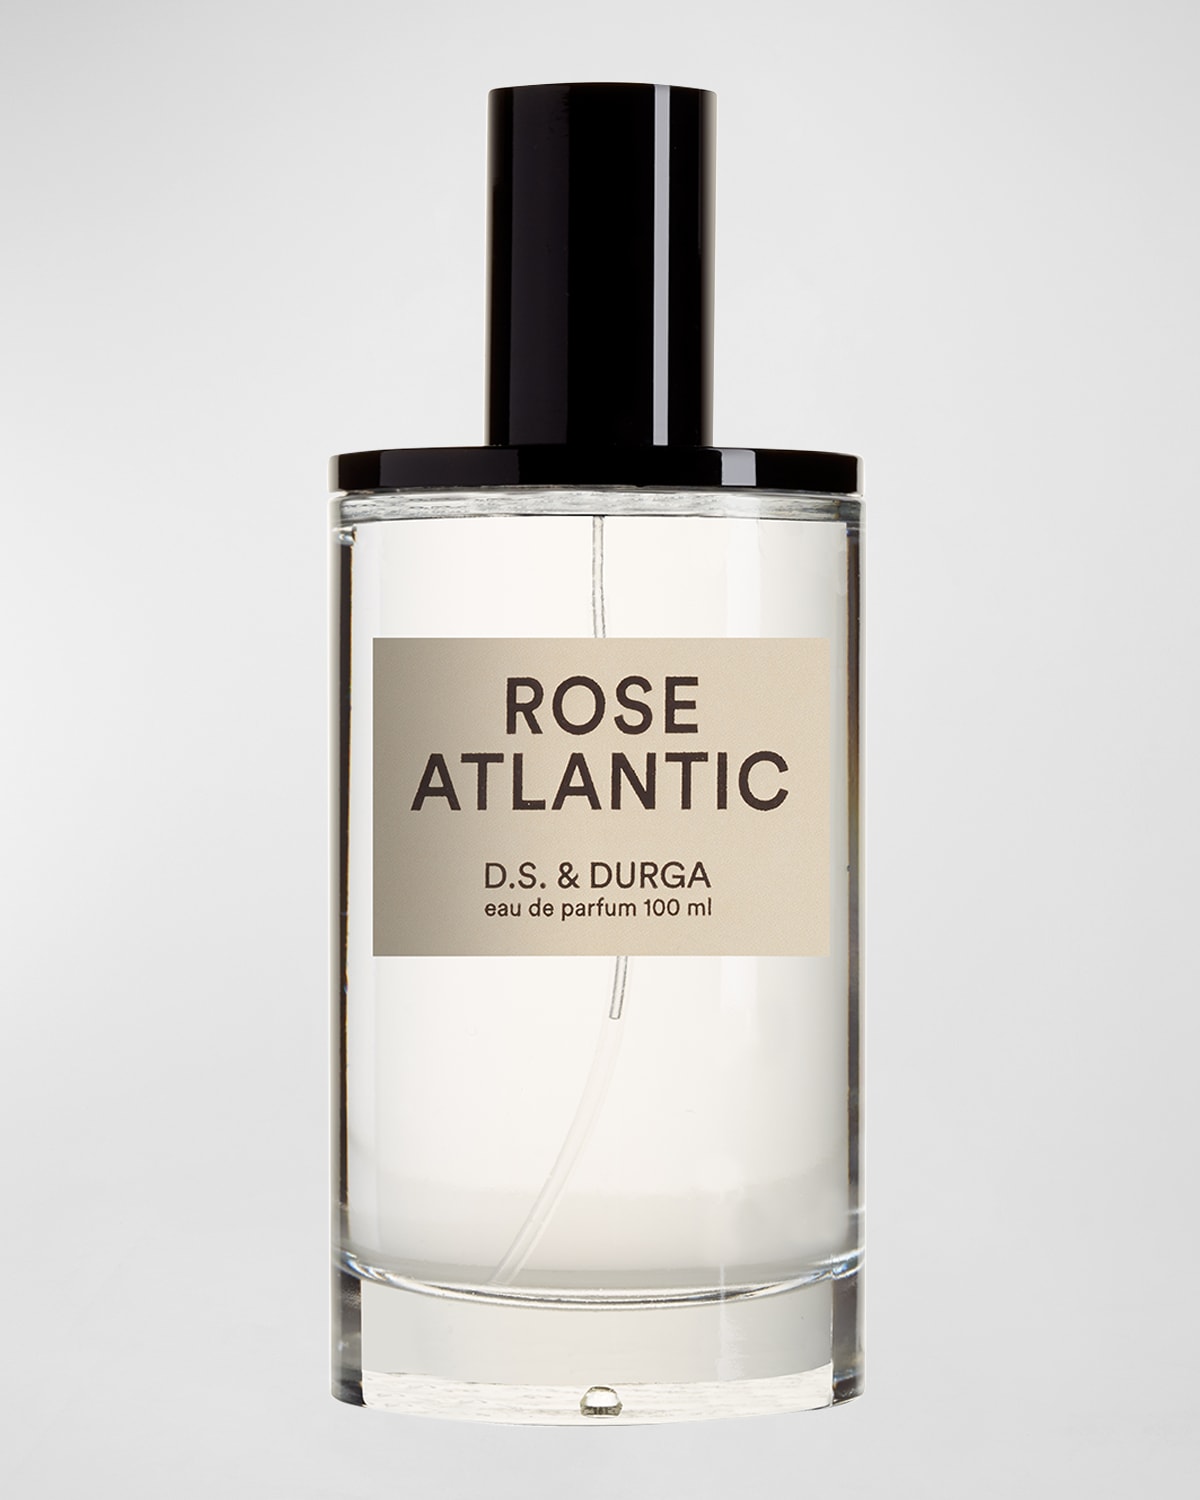 D.S. & DURGA Rose Atlantic Eau de Parfum, 3.4 oz.